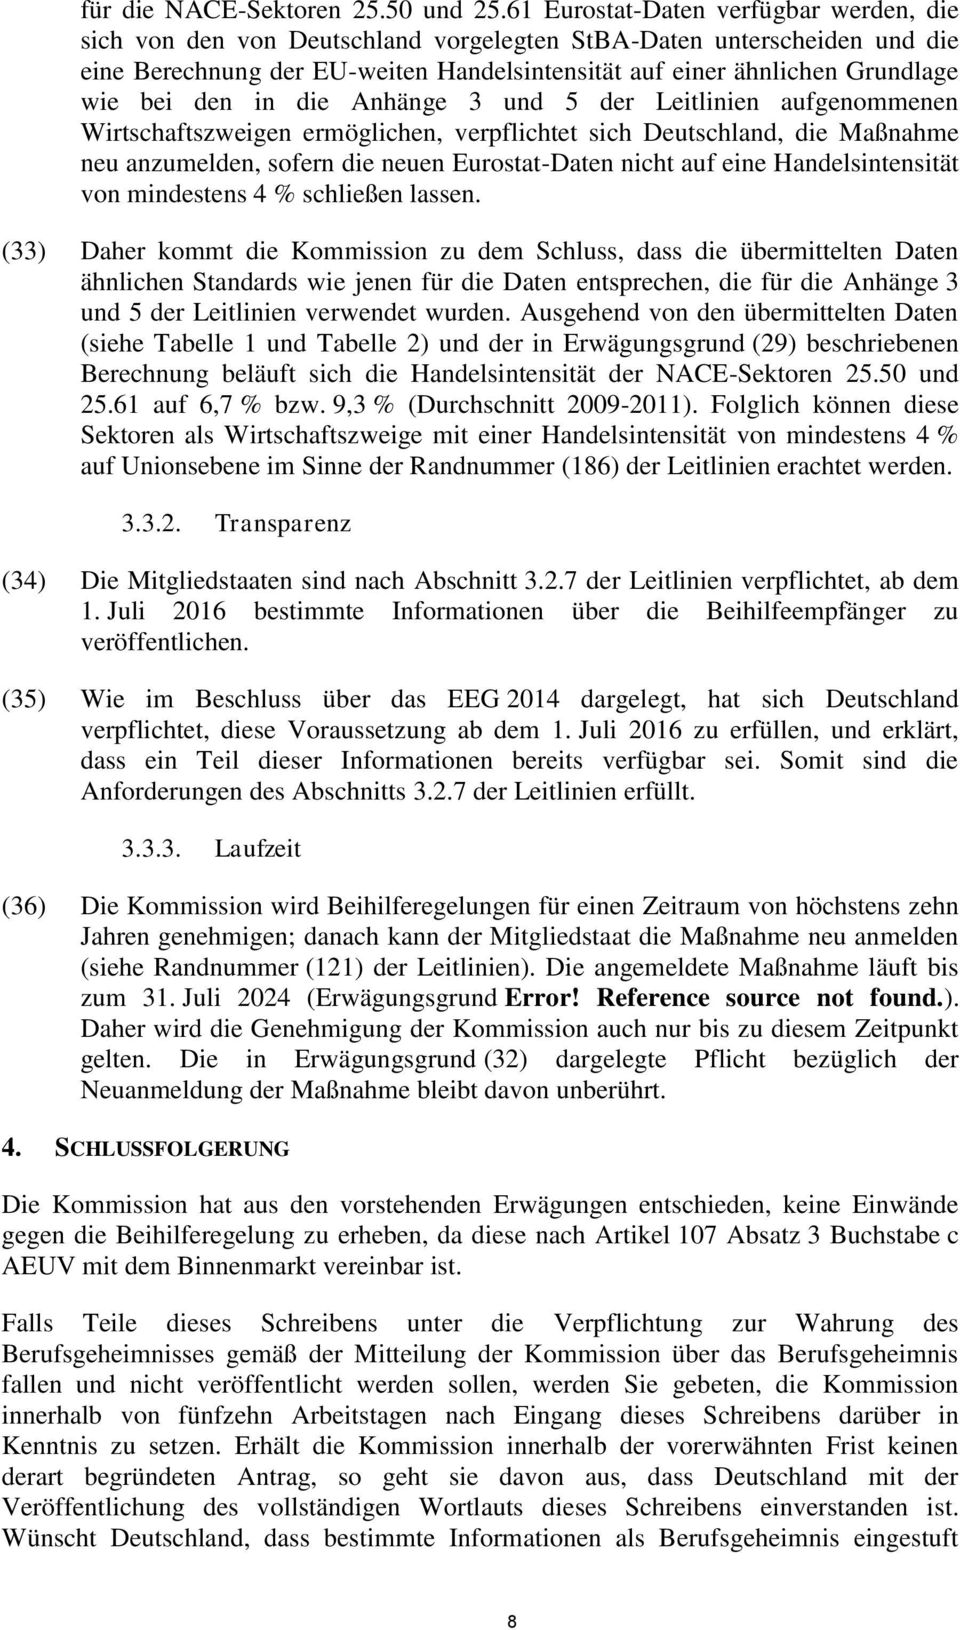 den in die Anhänge 3 und 5 der Leitlinien aufgenommenen Wirtschaftszweigen ermöglichen, verpflichtet sich Deutschland, die Maßnahme neu anzumelden, sofern die neuen Eurostat-Daten nicht auf eine